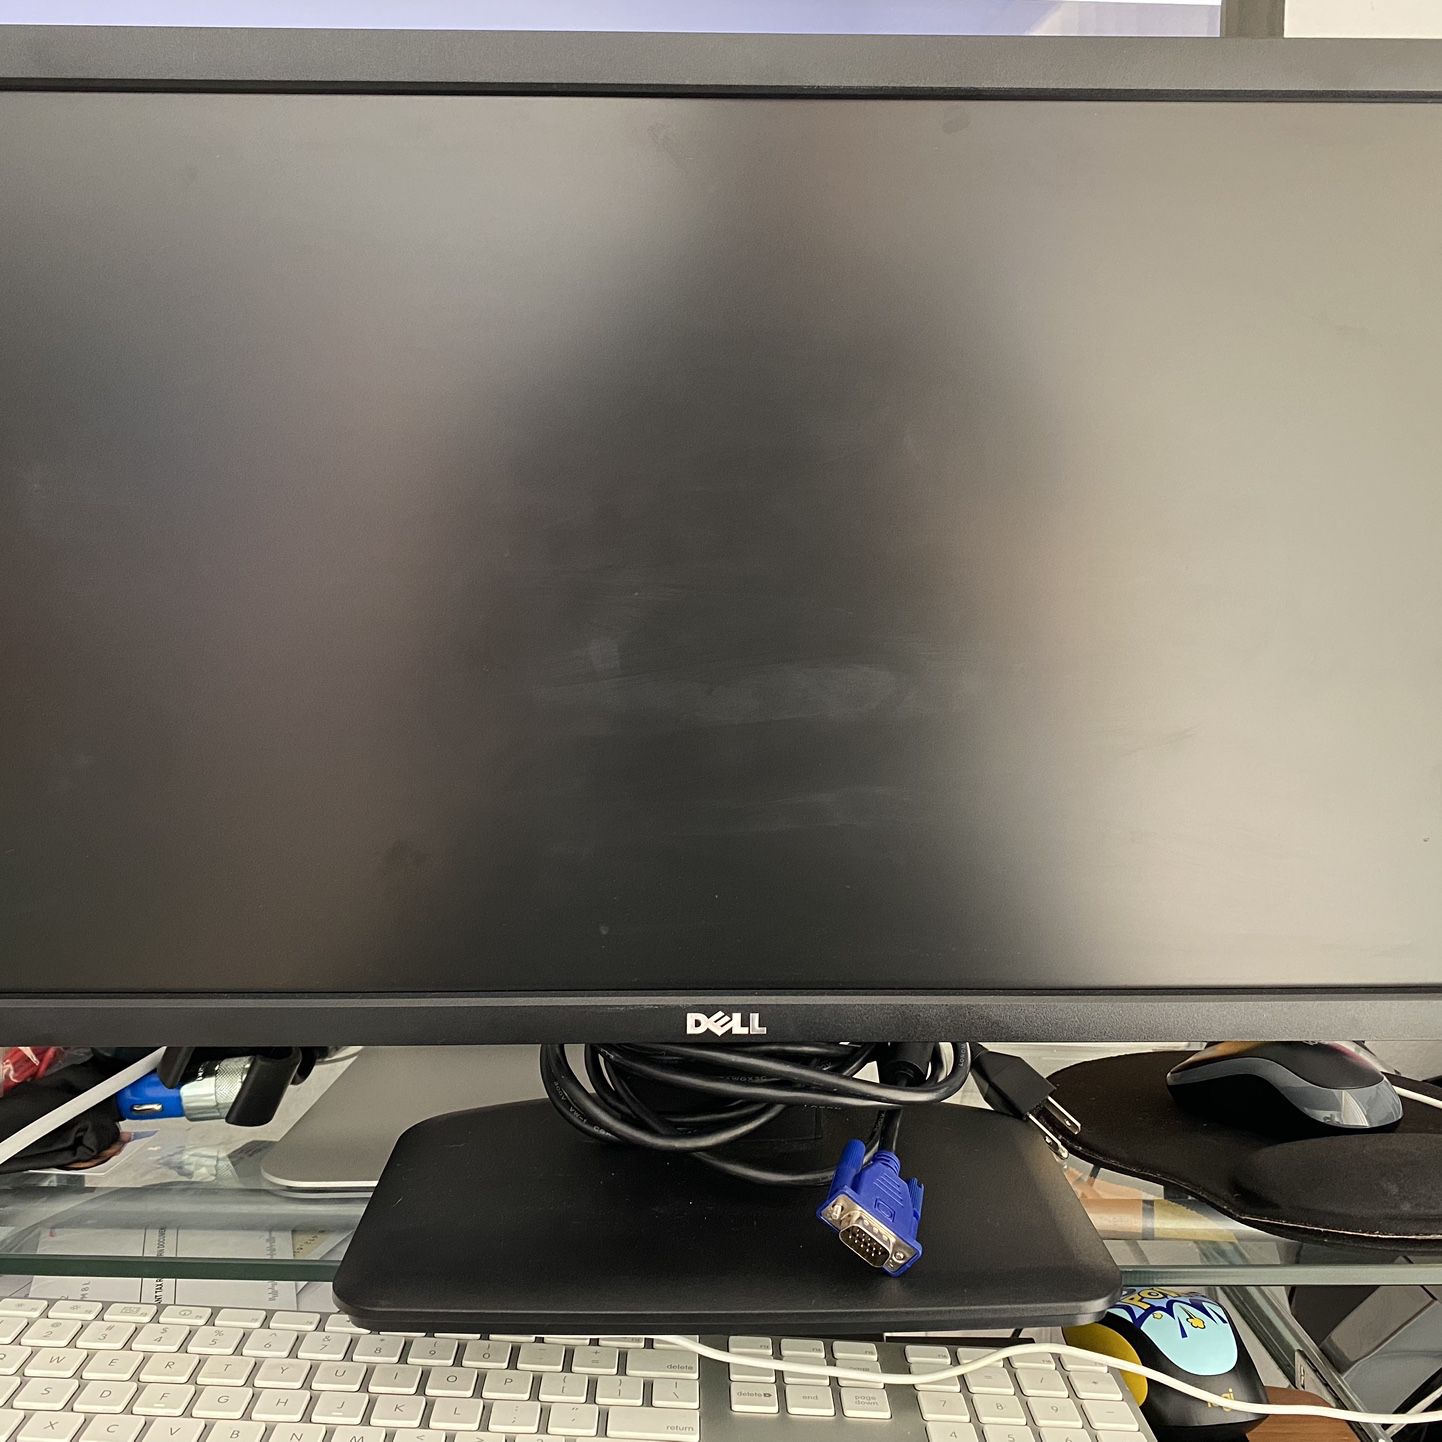 Dell Monitor 23” model E2313hf 